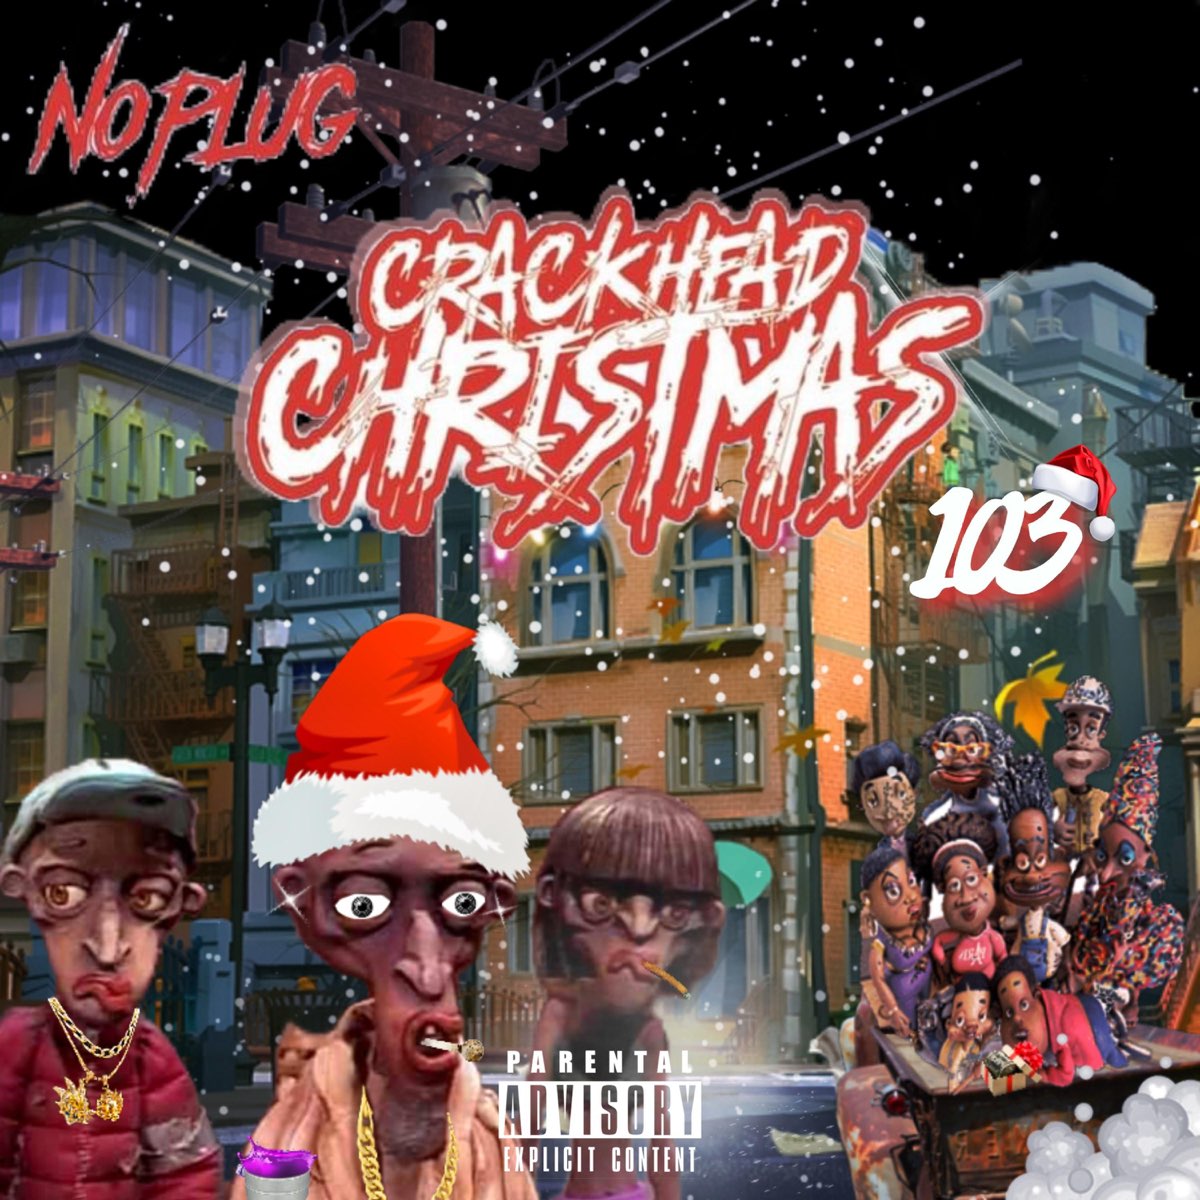 ‎Crackhead Christmas 103 - Album by No Plug - Apple Music